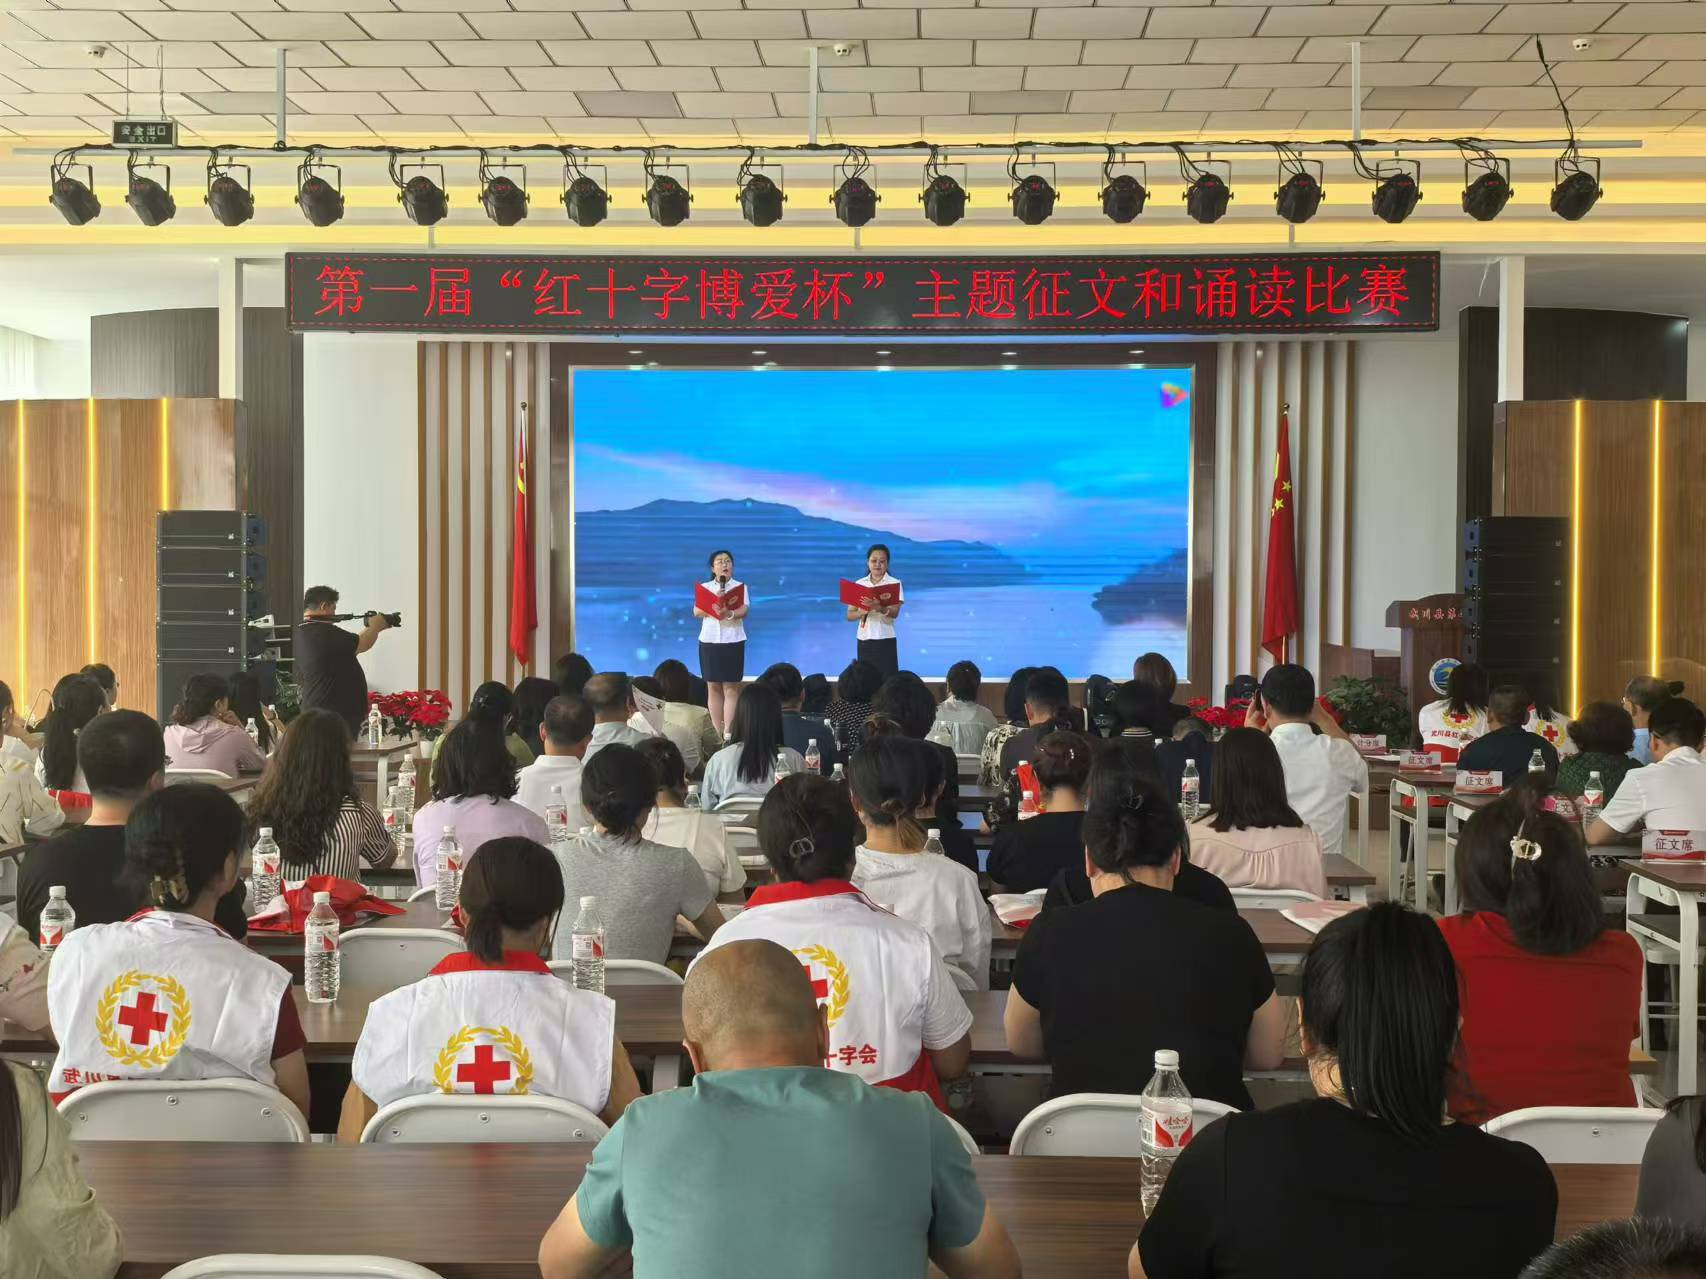 人道主义 生生不息 武川县成功举办第一届“红十字博爱杯”主题征文和朗诵比赛